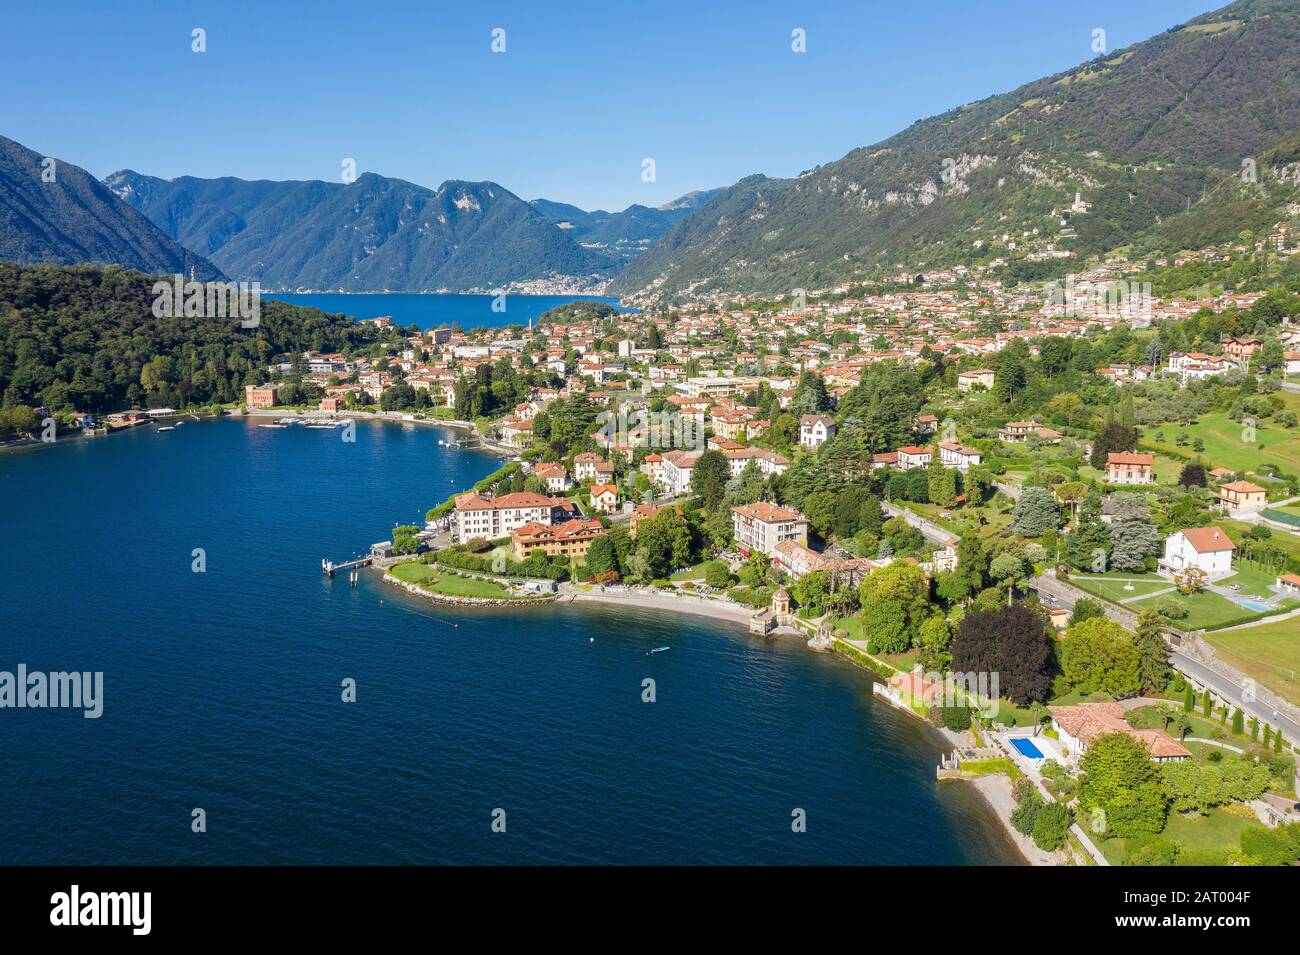 Bâtiments sur la péninsule près du lac de Côme en Lombardie, Italie Banque D'Images